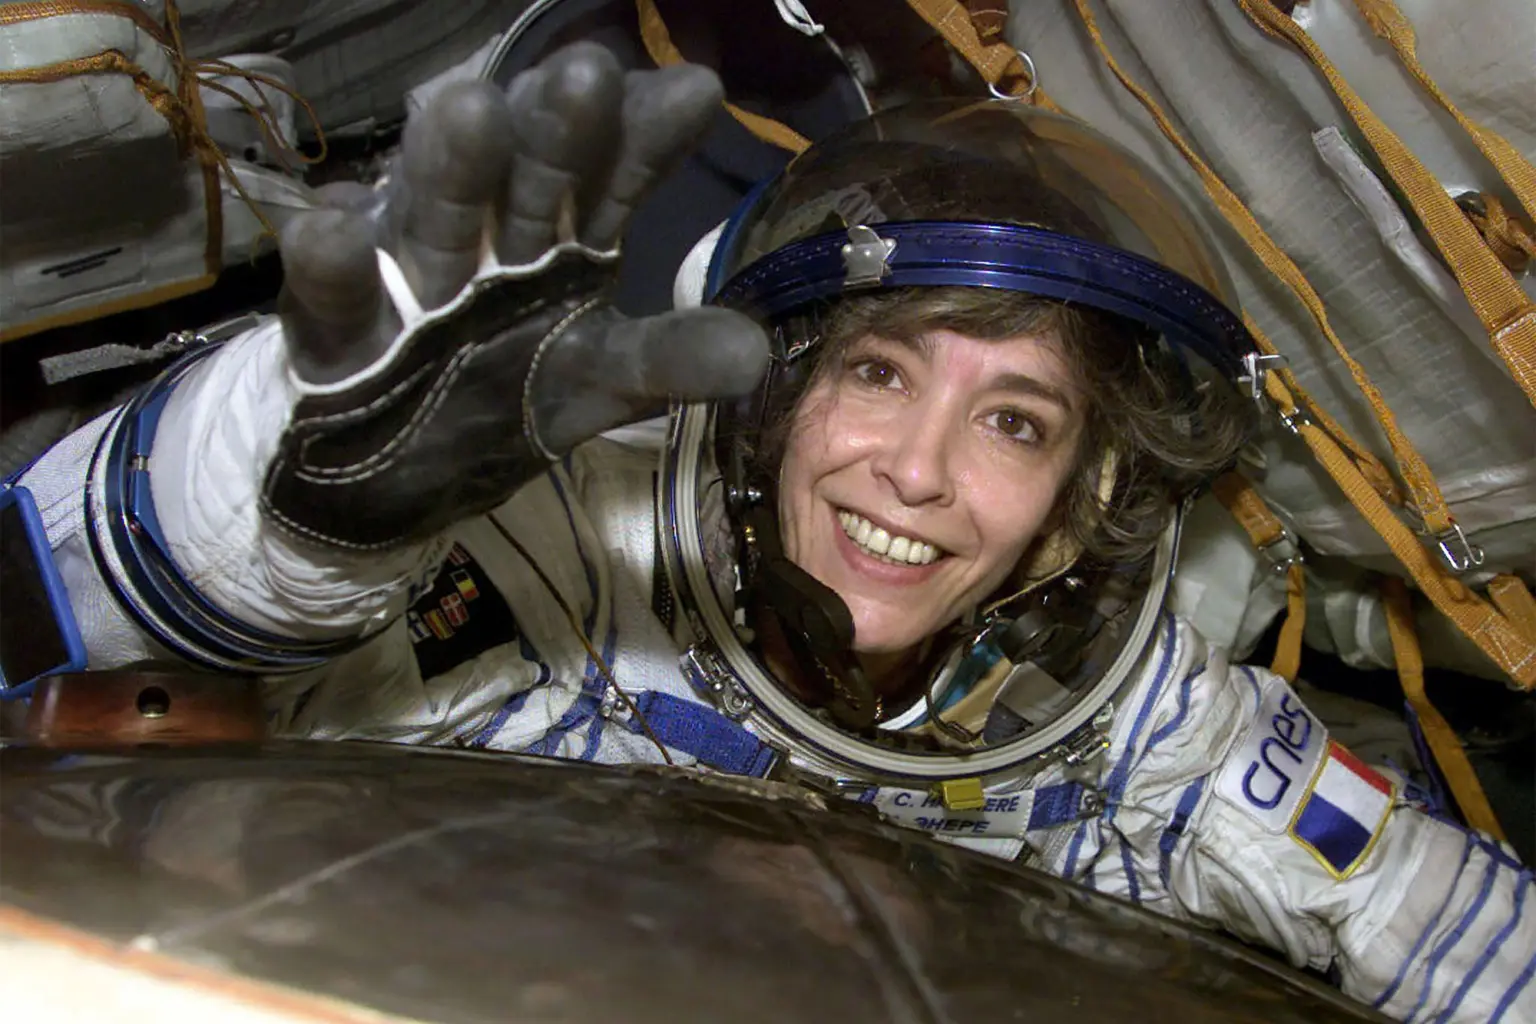 Κλοντί Αϊνιερέ: Φώναζε η Γαλλίδα αστροναύτης «η Γη πρέπει να προειδοποιηθεί» πριν αποπειραθεί να αυτοκτονήσει;